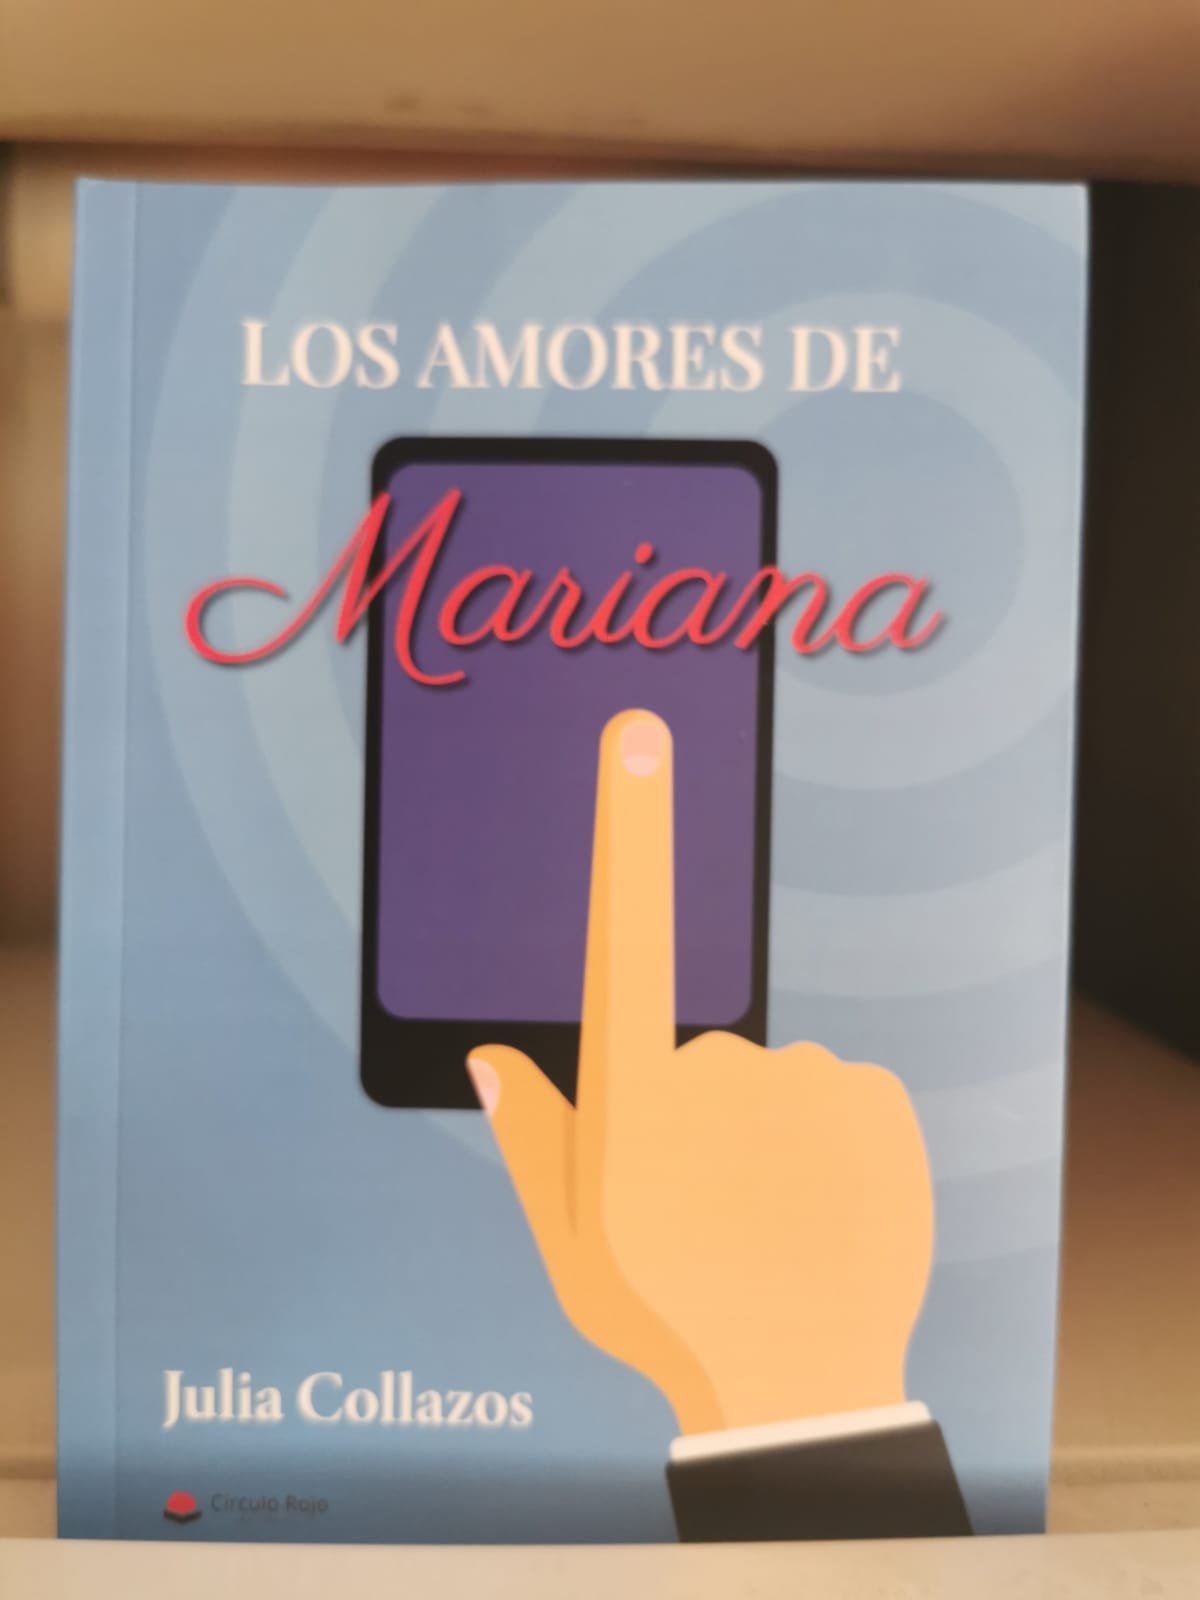 Reseña de “Los amores de Mariana”, de Julia Collazos Carmona | Por Mateusz Kania